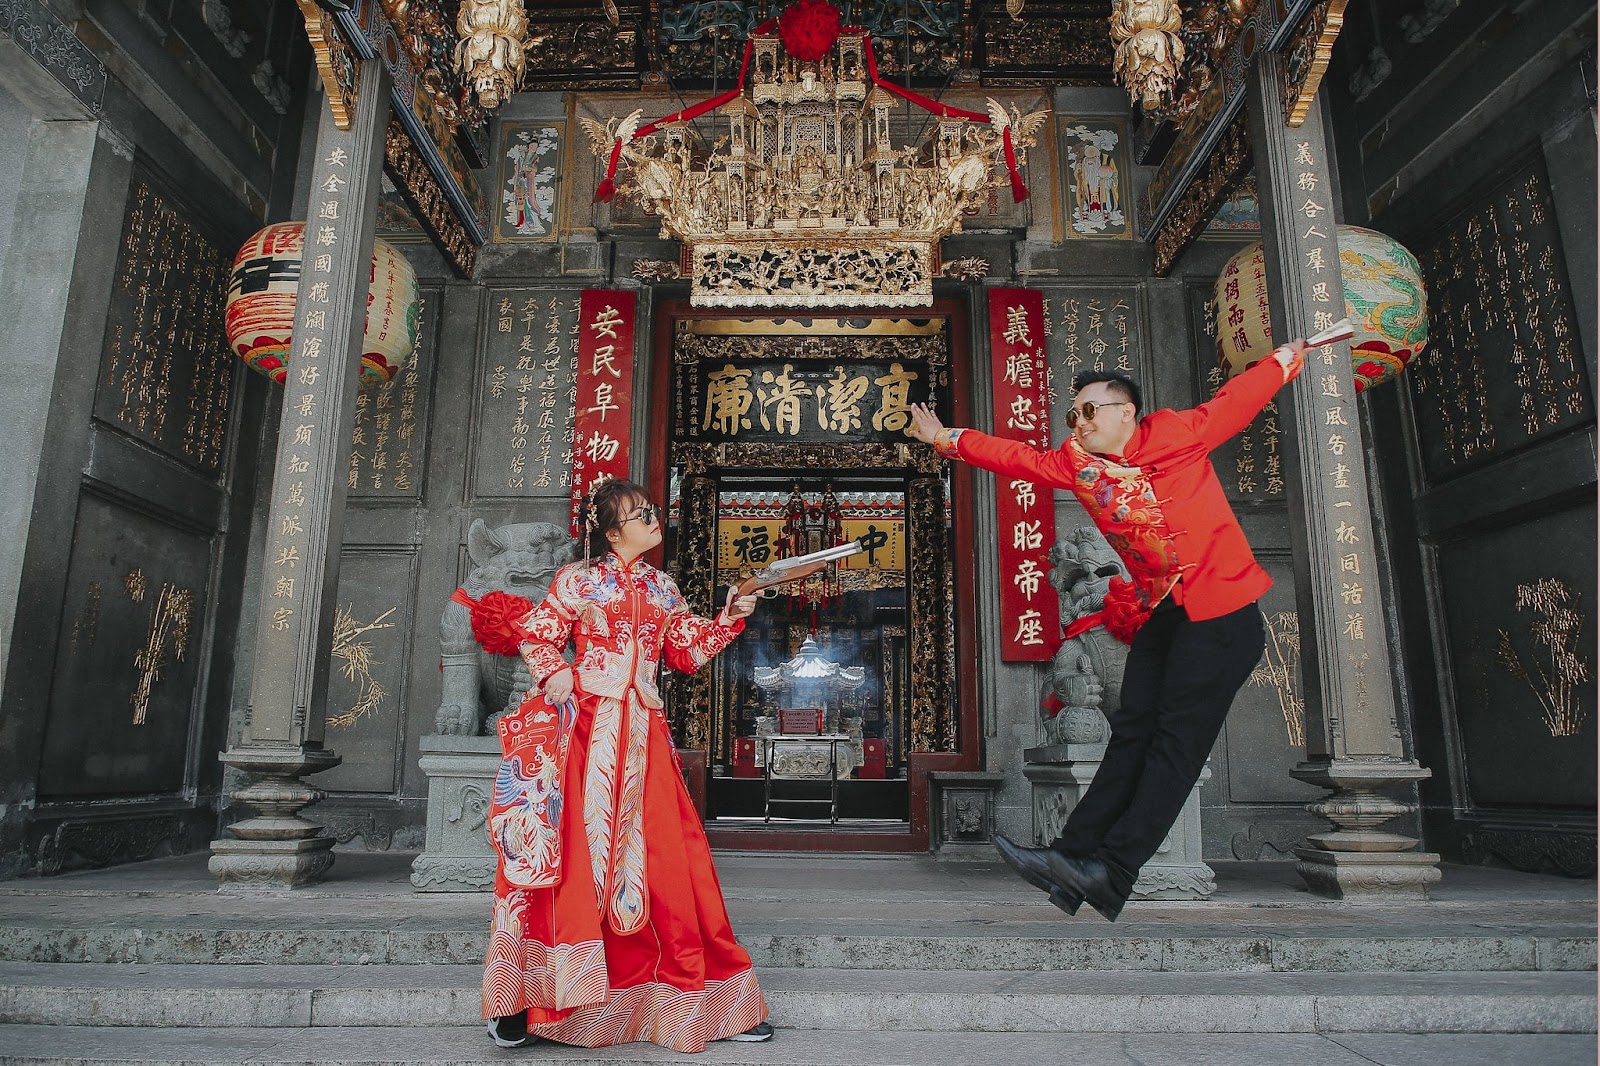 Trang phục cưới cổ điển rất phù hợp cho khung cảnh ở chùa bà Thiên Hậu 